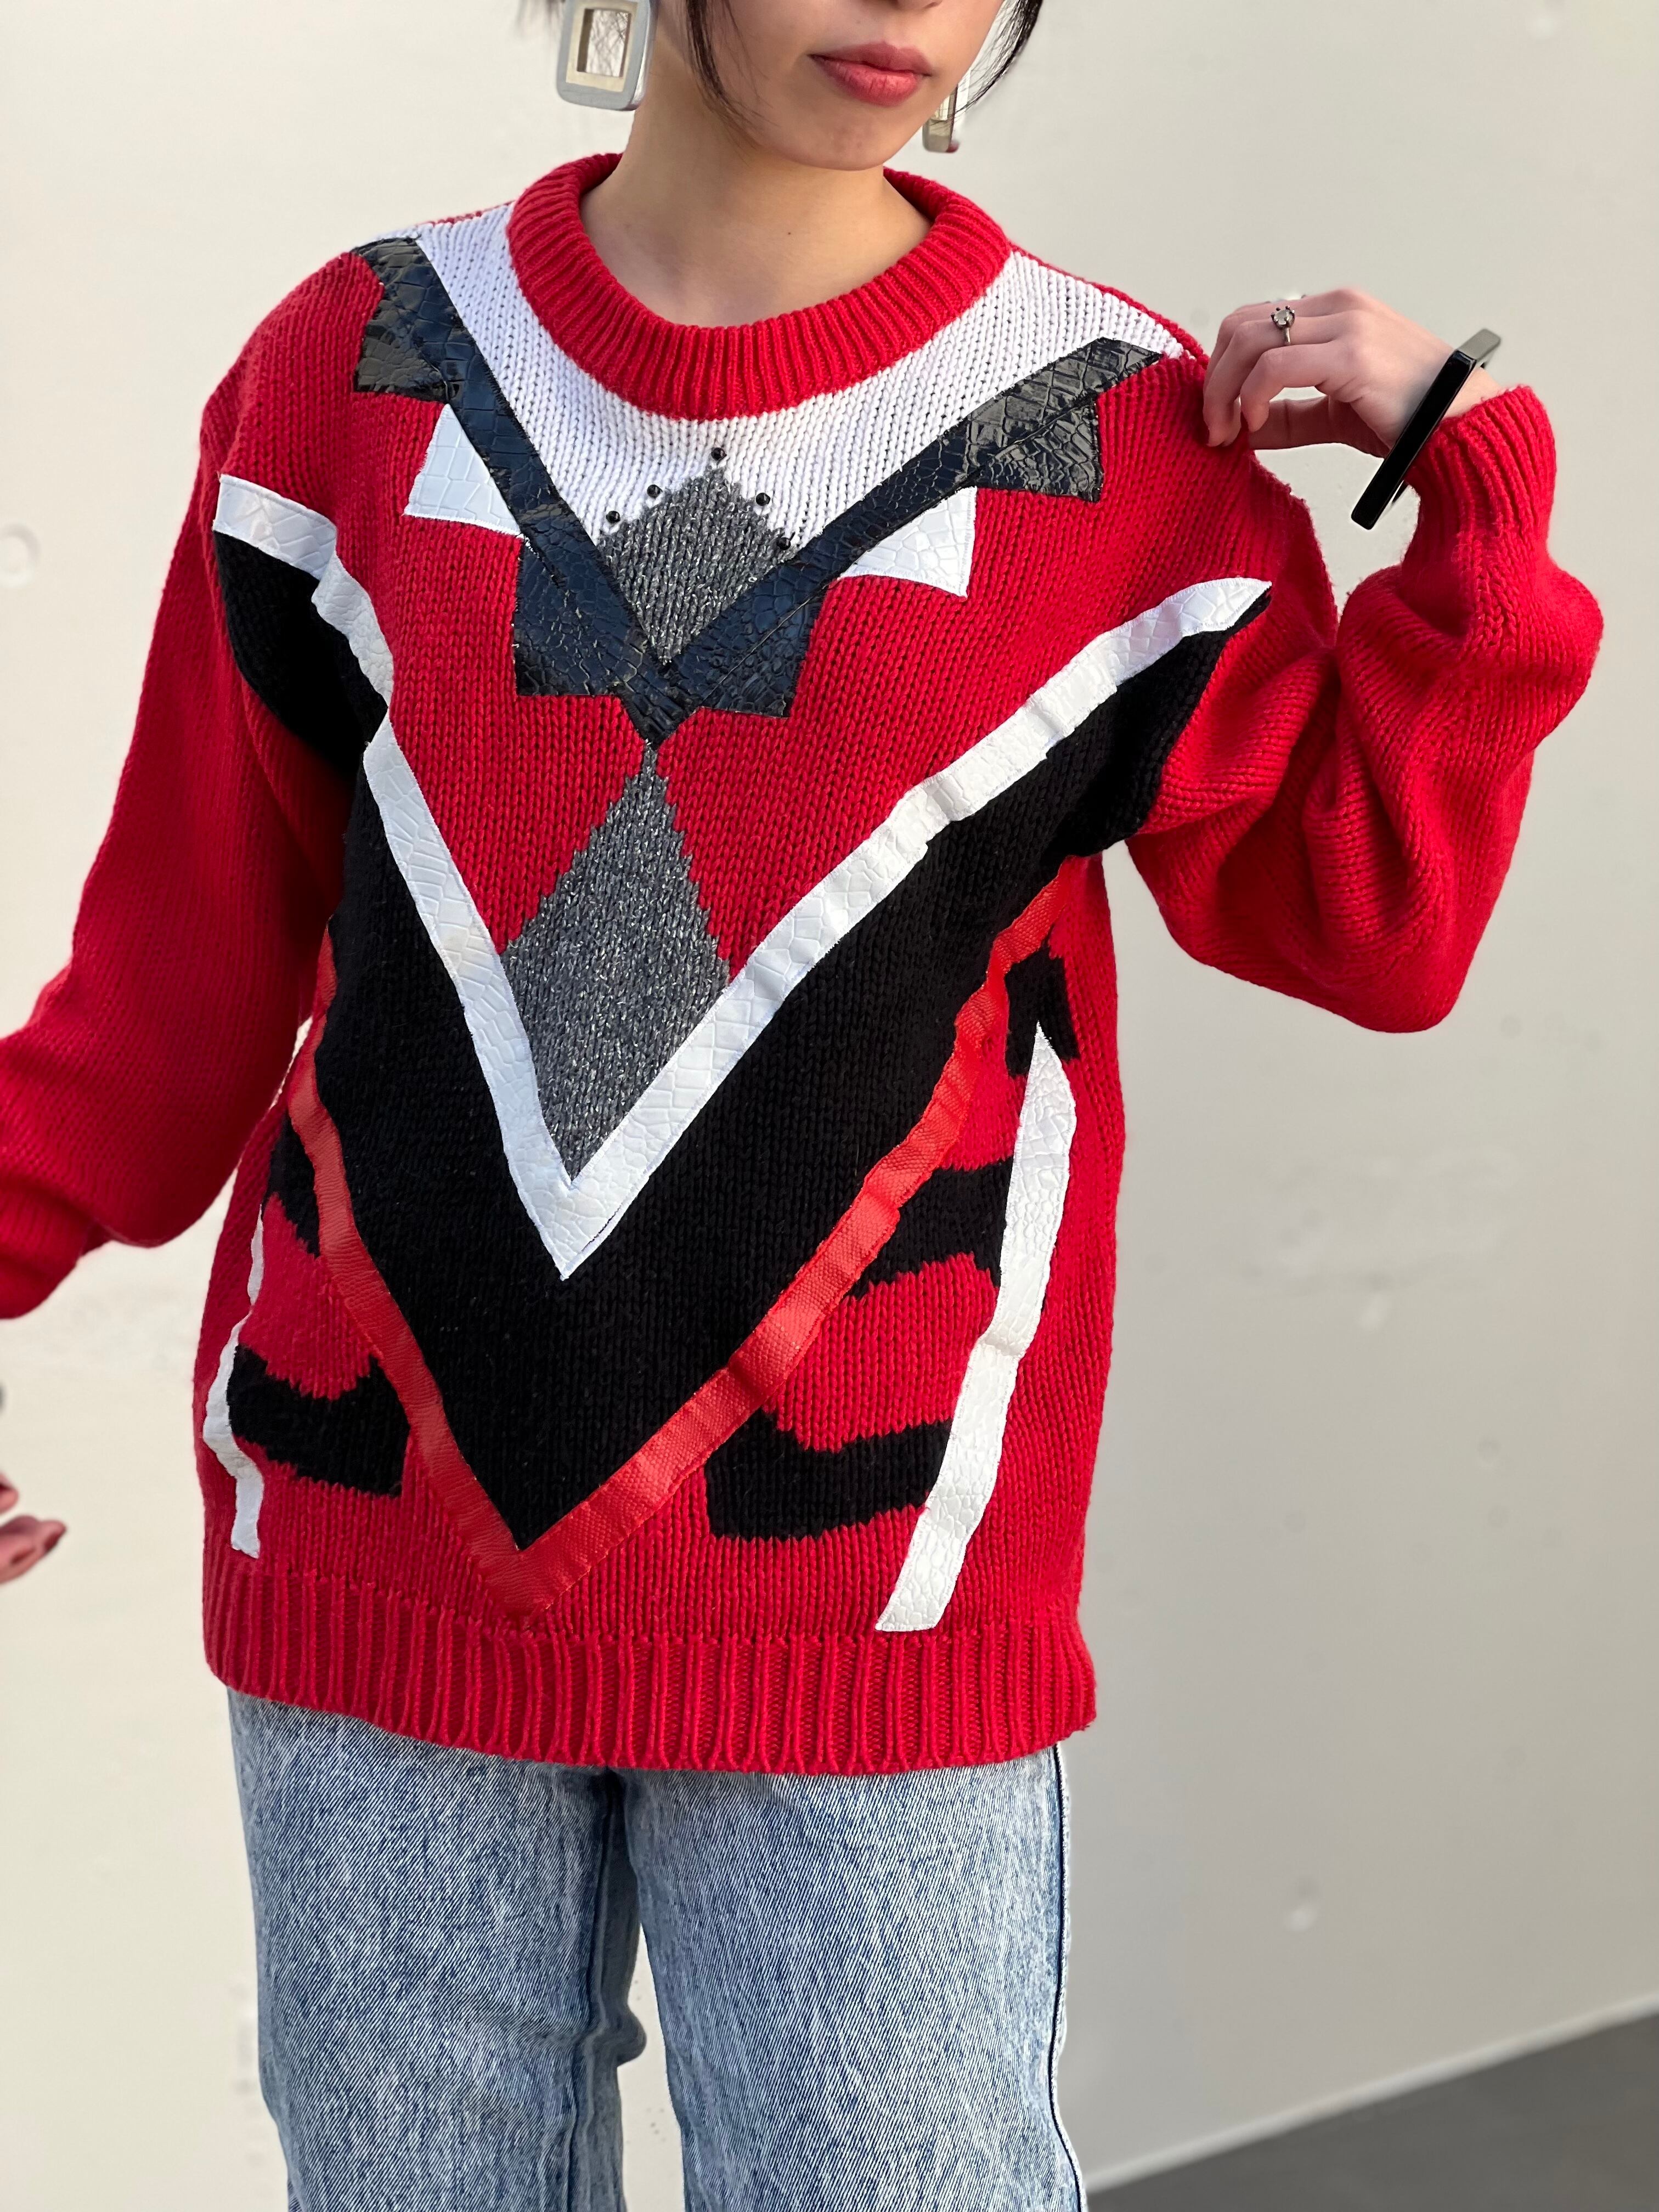 80s red × black white gray knit tops ( ヴィンテージ レッド ブラック ホワイト グレー ニット トップス